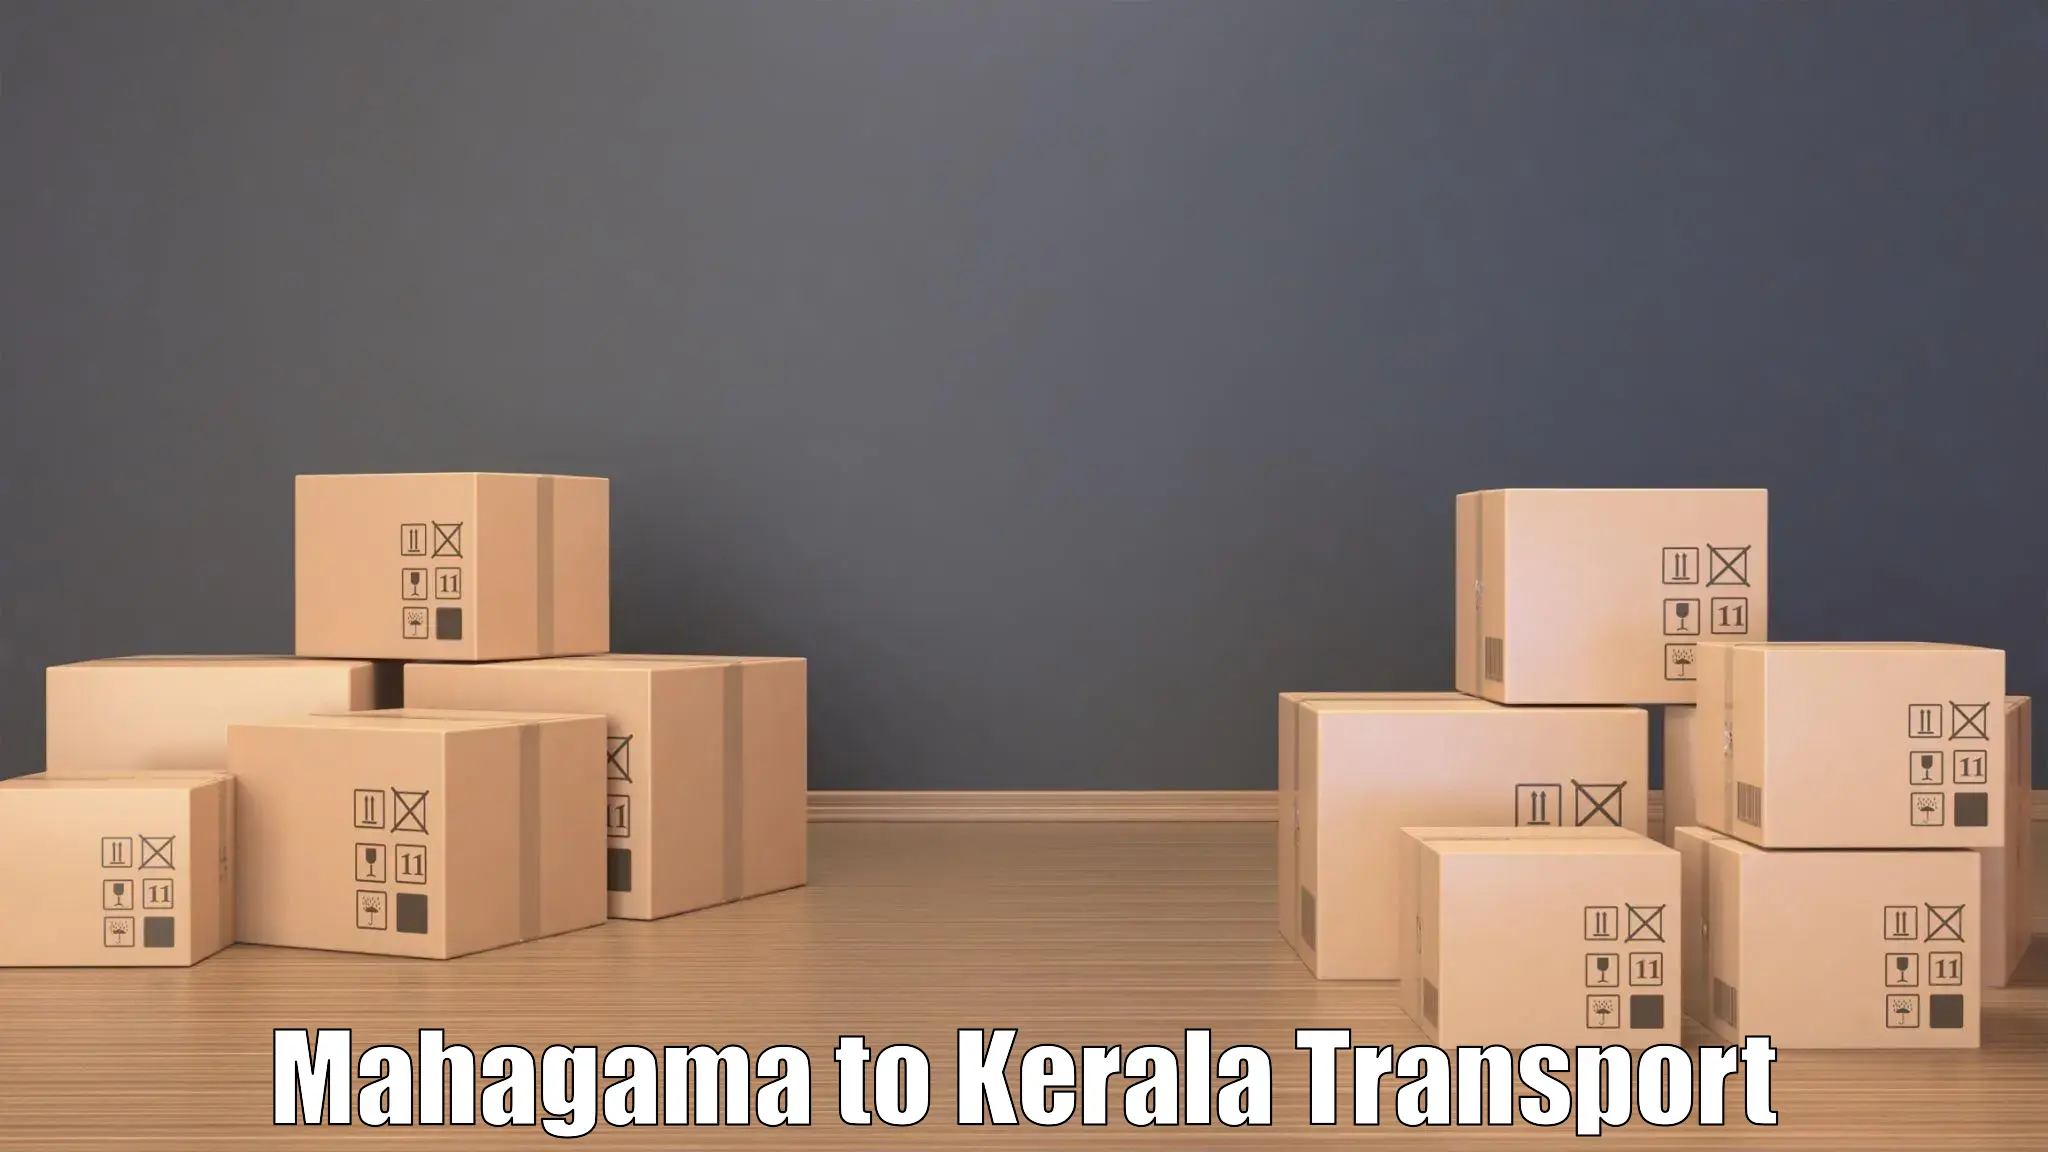 Shipping partner in Mahagama to Kerala